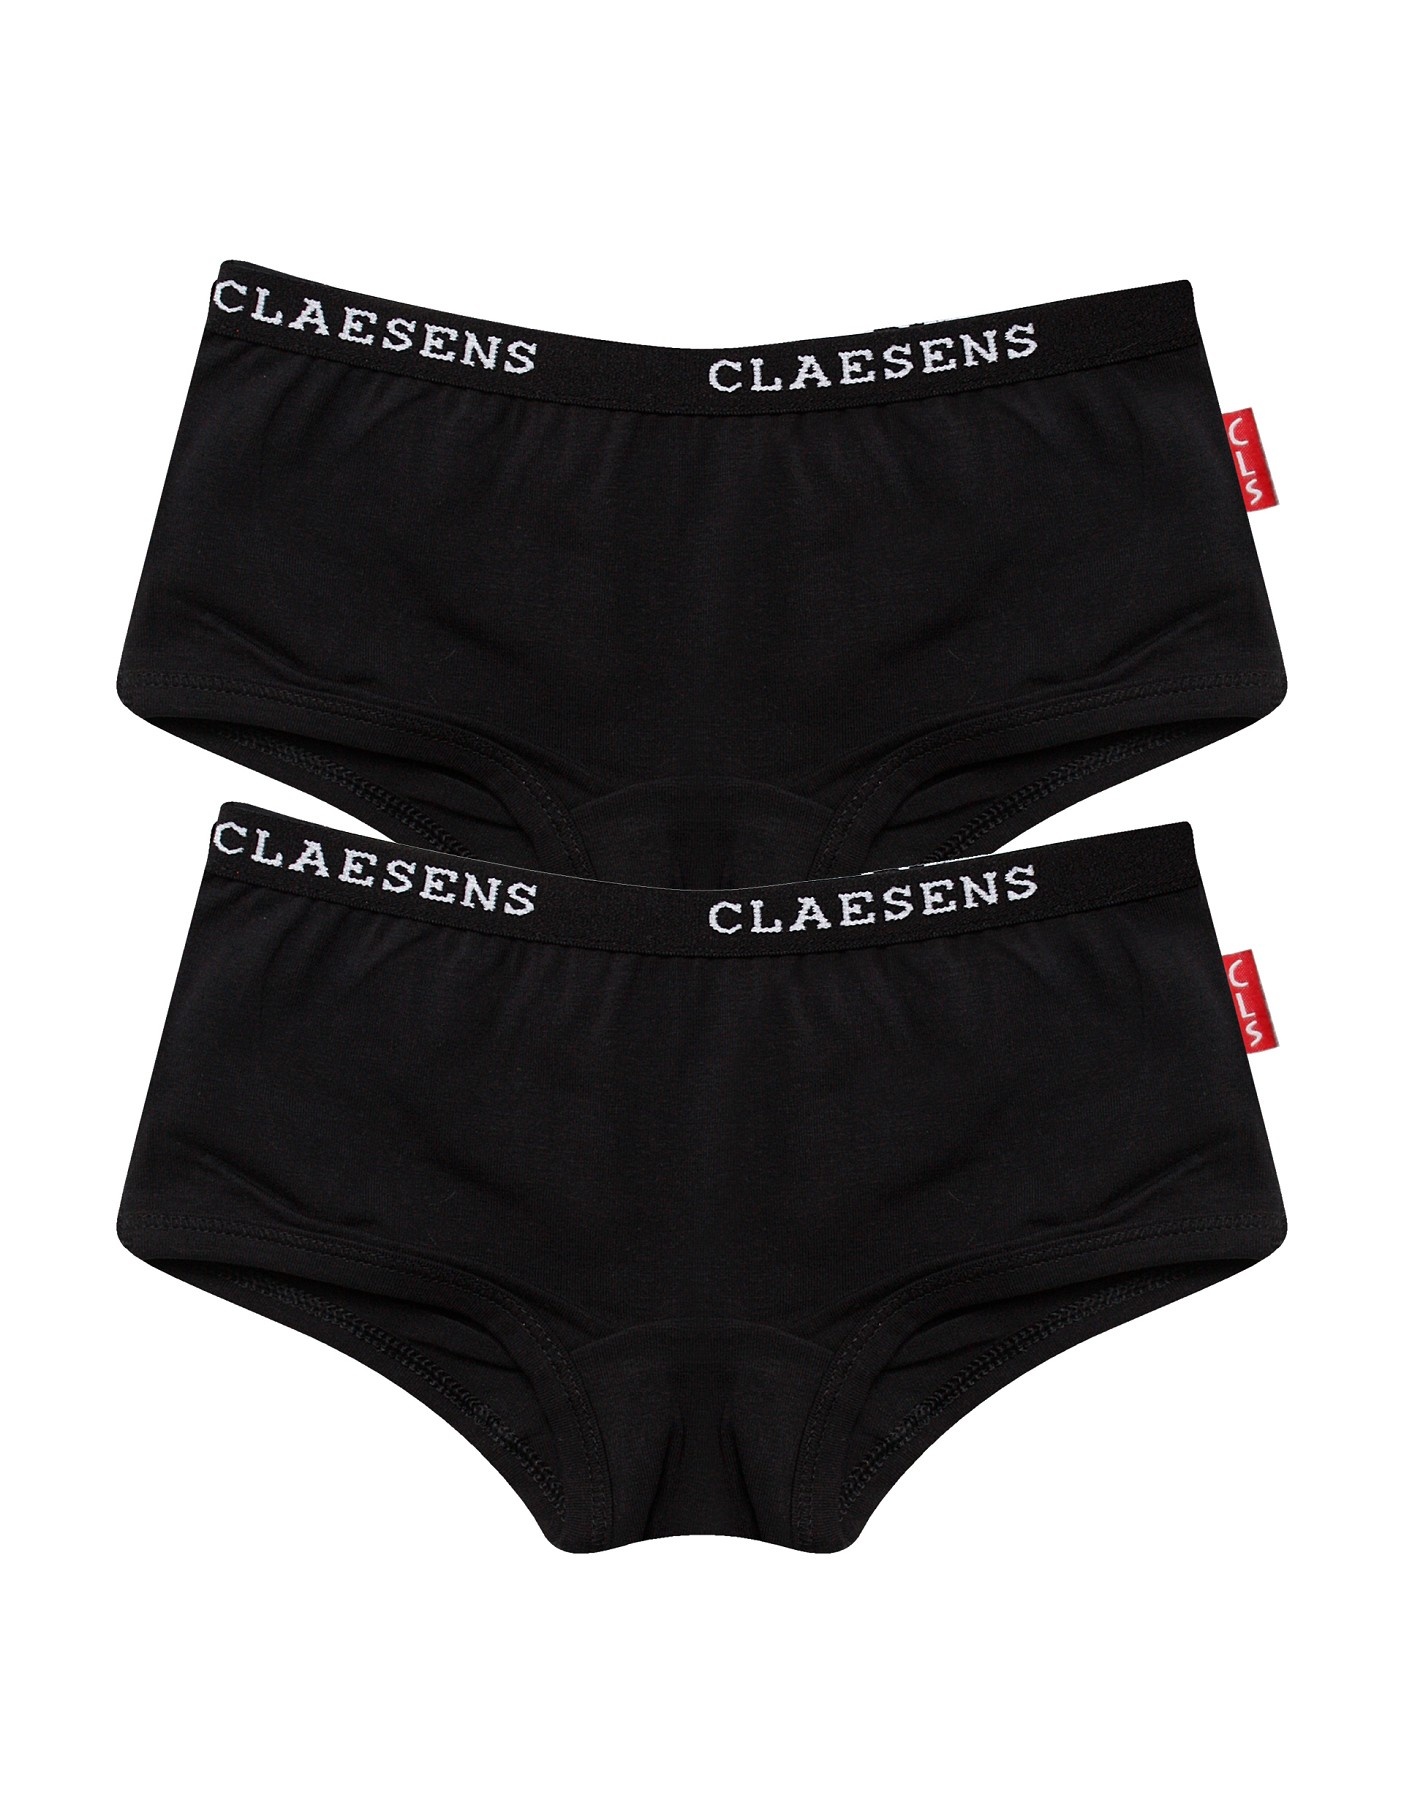 Claesen's - Girls Black Cotton Knickers (2 Pack)